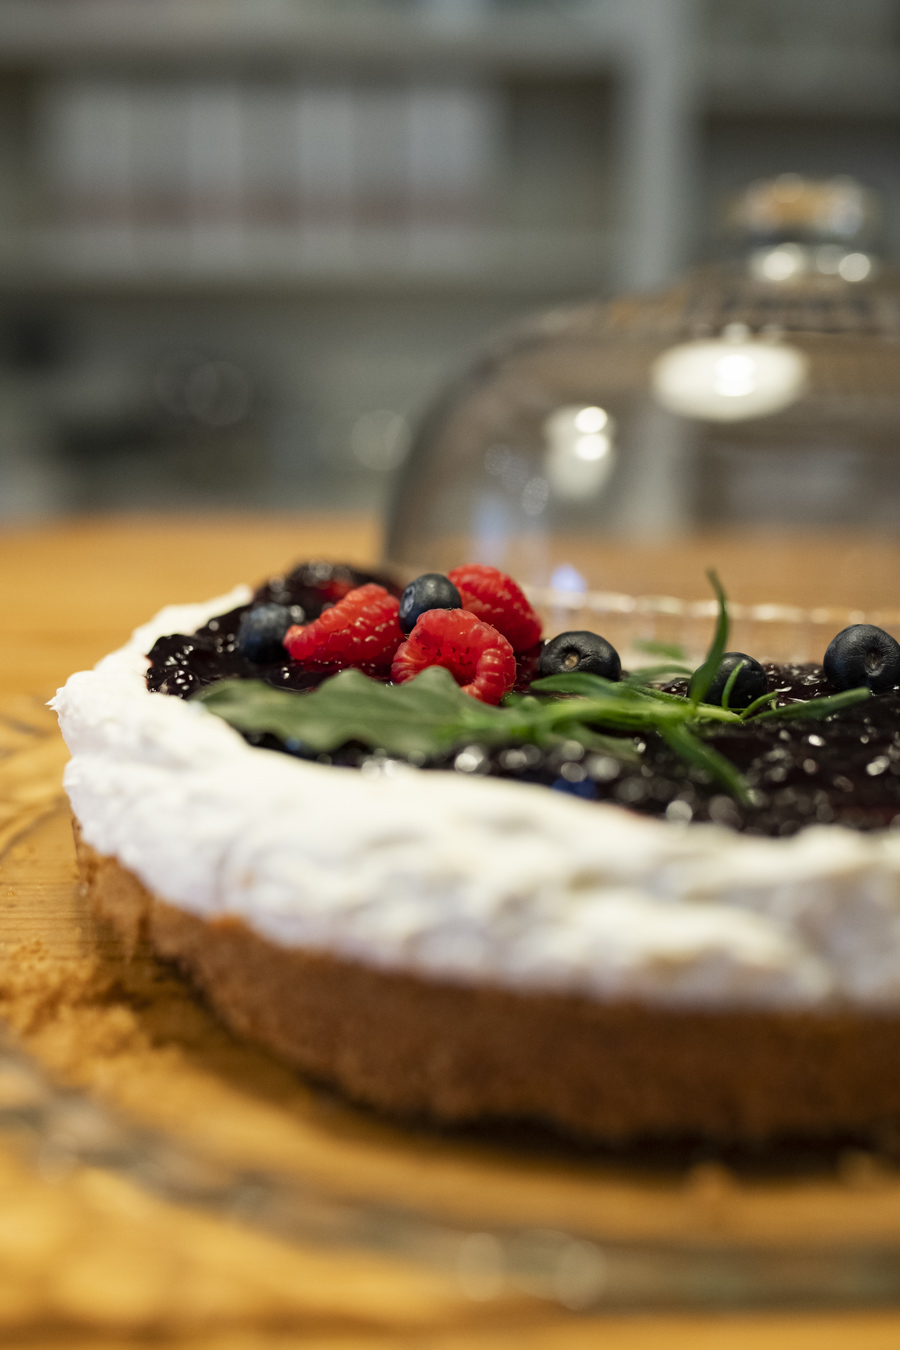 Bakkerij Paais opent “taarten-proeflokaal” in Oude Kijk in ’t Jatstraat